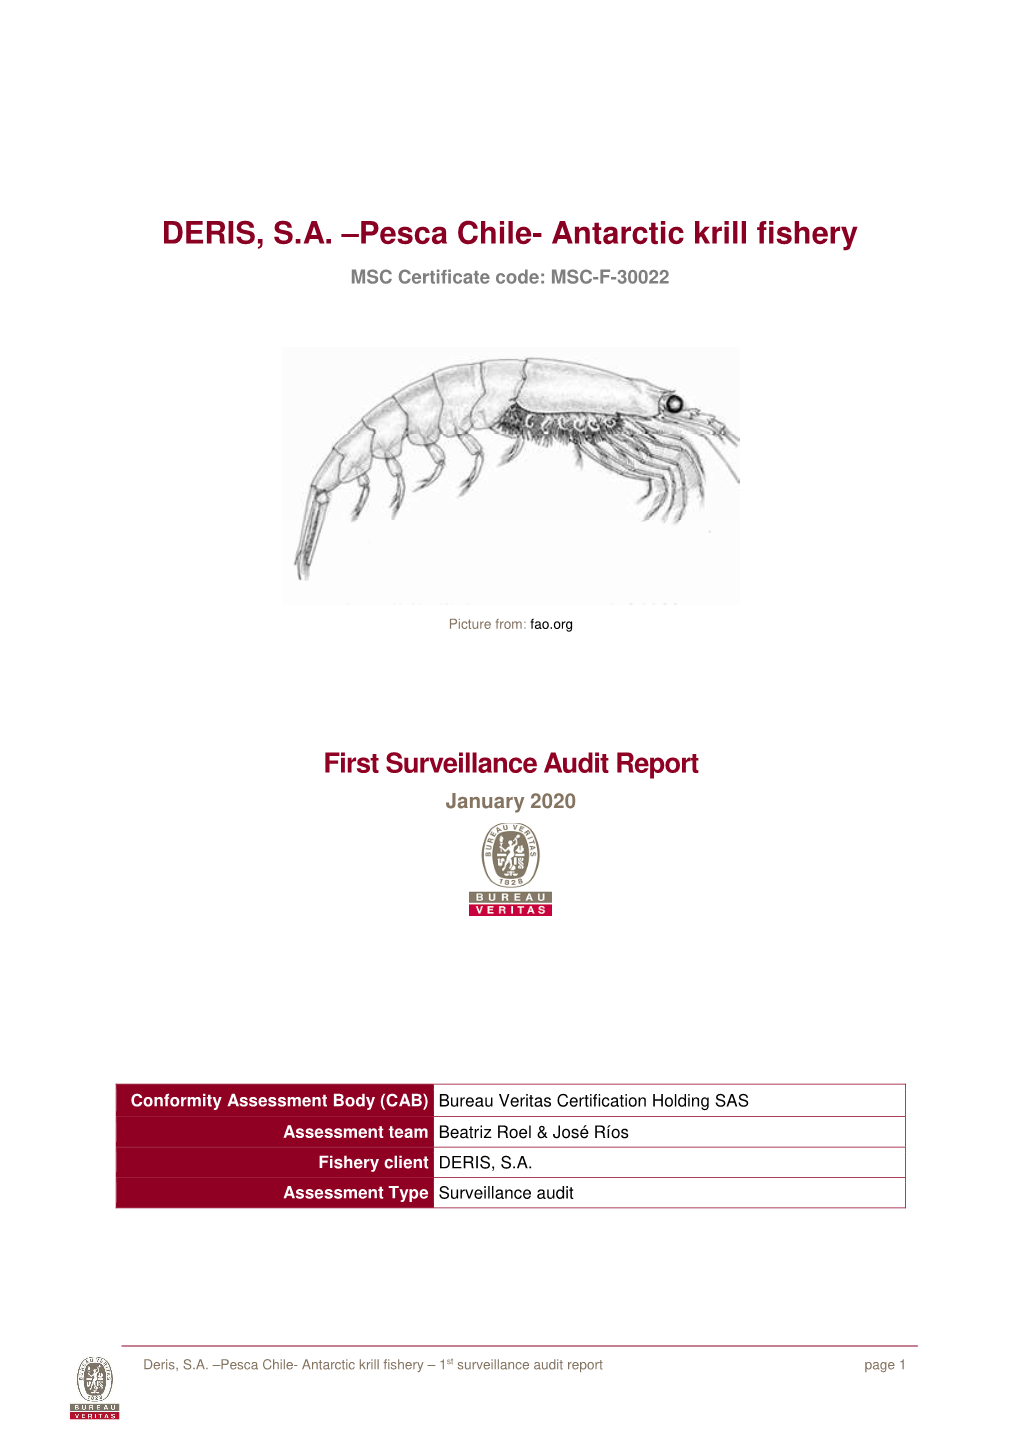 DERIS, SA –Pesca Chile- Antarctic Krill Fishery